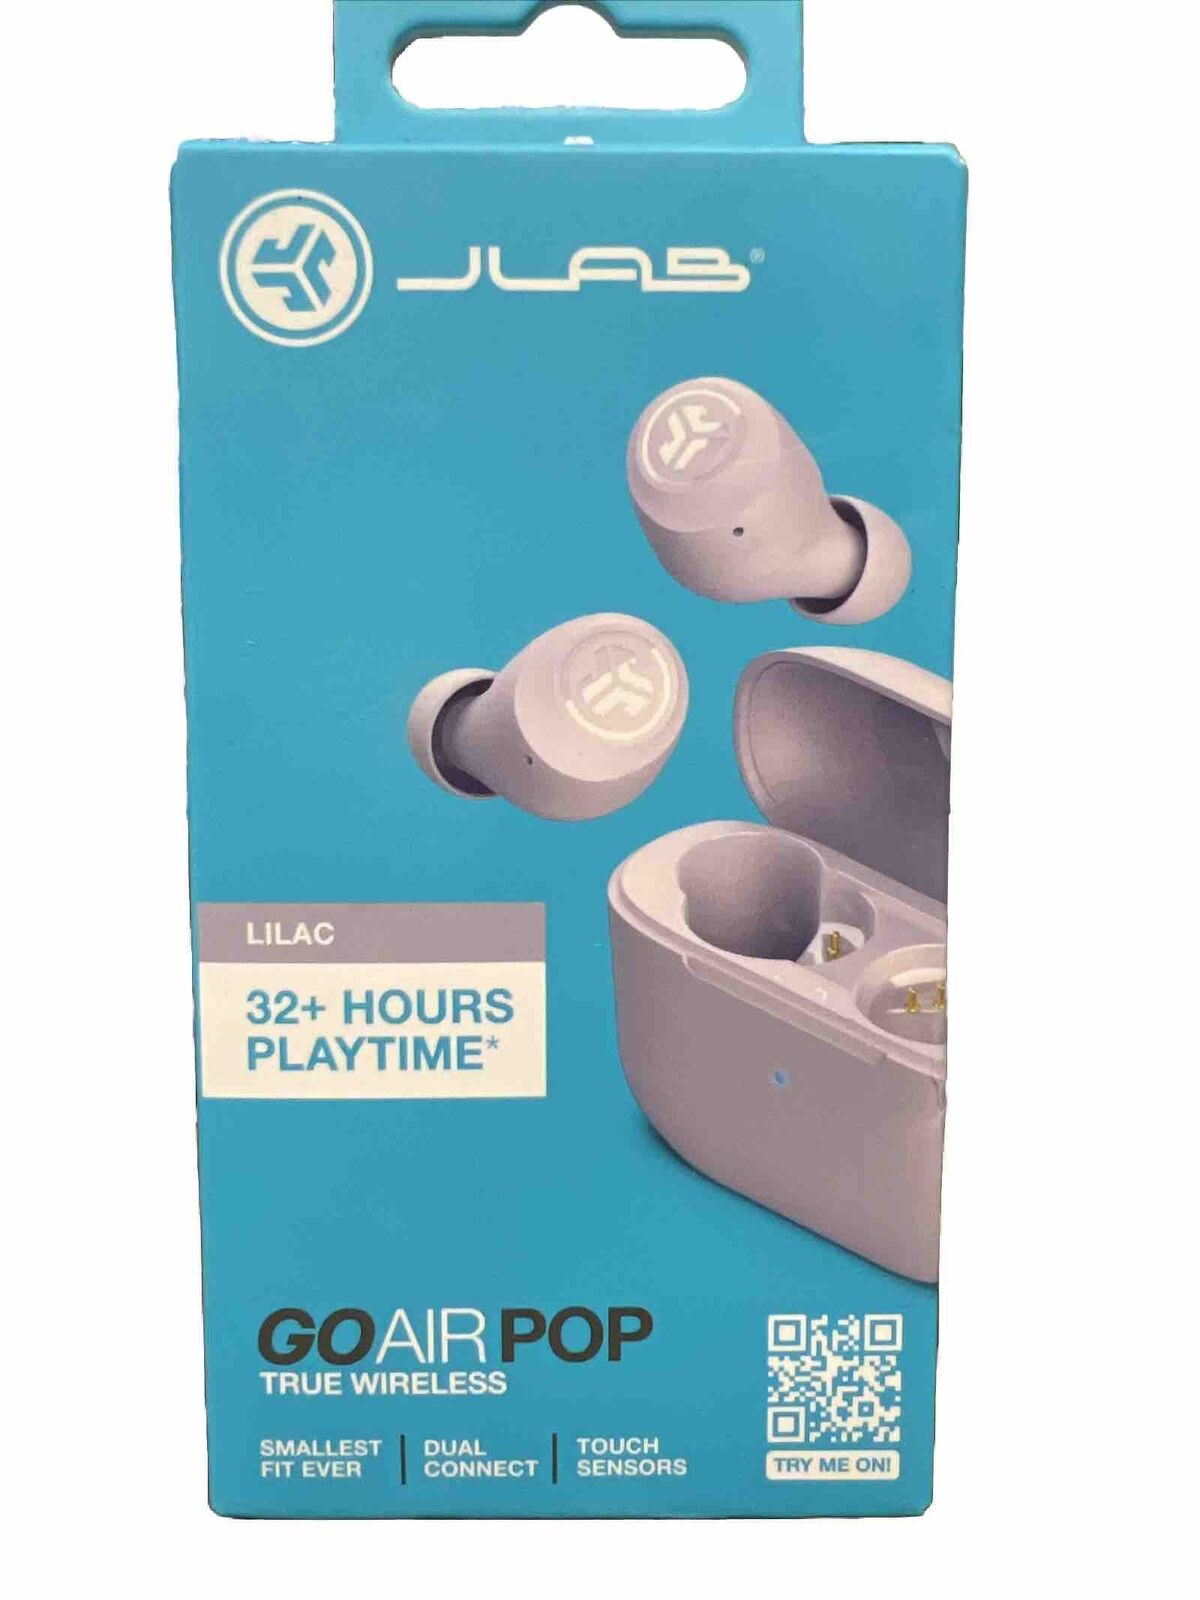 JLAB Go Air Pop Wireless Earbuds - Lilac